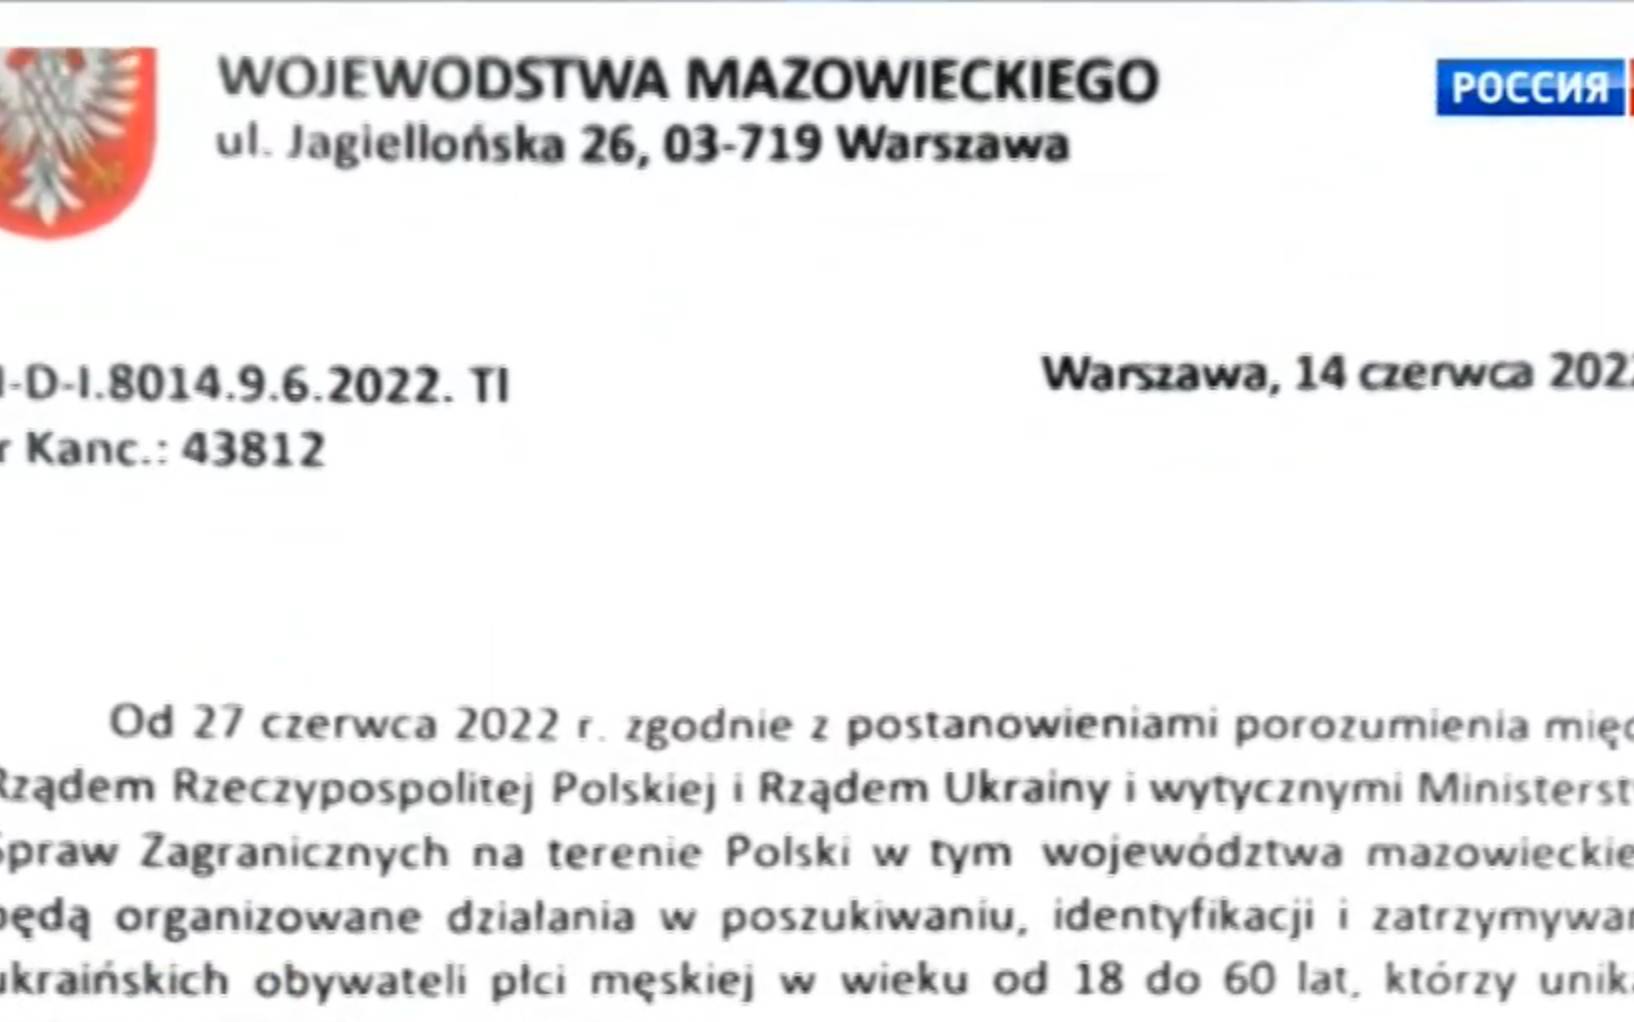 Grafika do artykułu GOWORIT MOSKWA. "Wojewodstwo mazowieckie". Rosyjska propaganda bije fejkiem z Warszawy